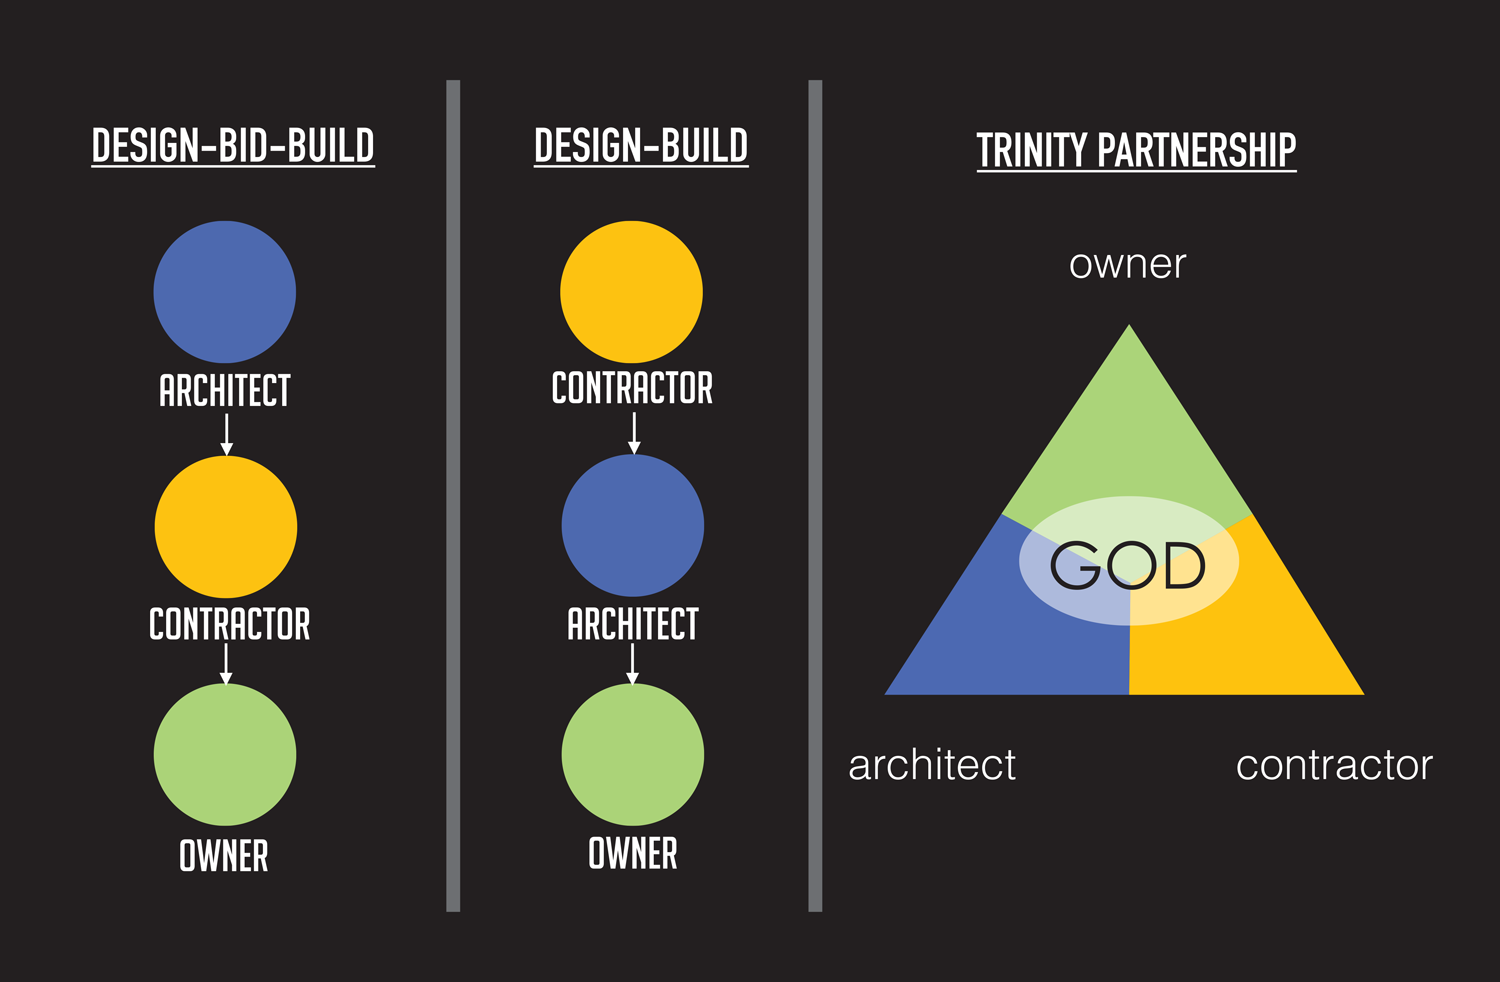 Trinity Partnership church architect